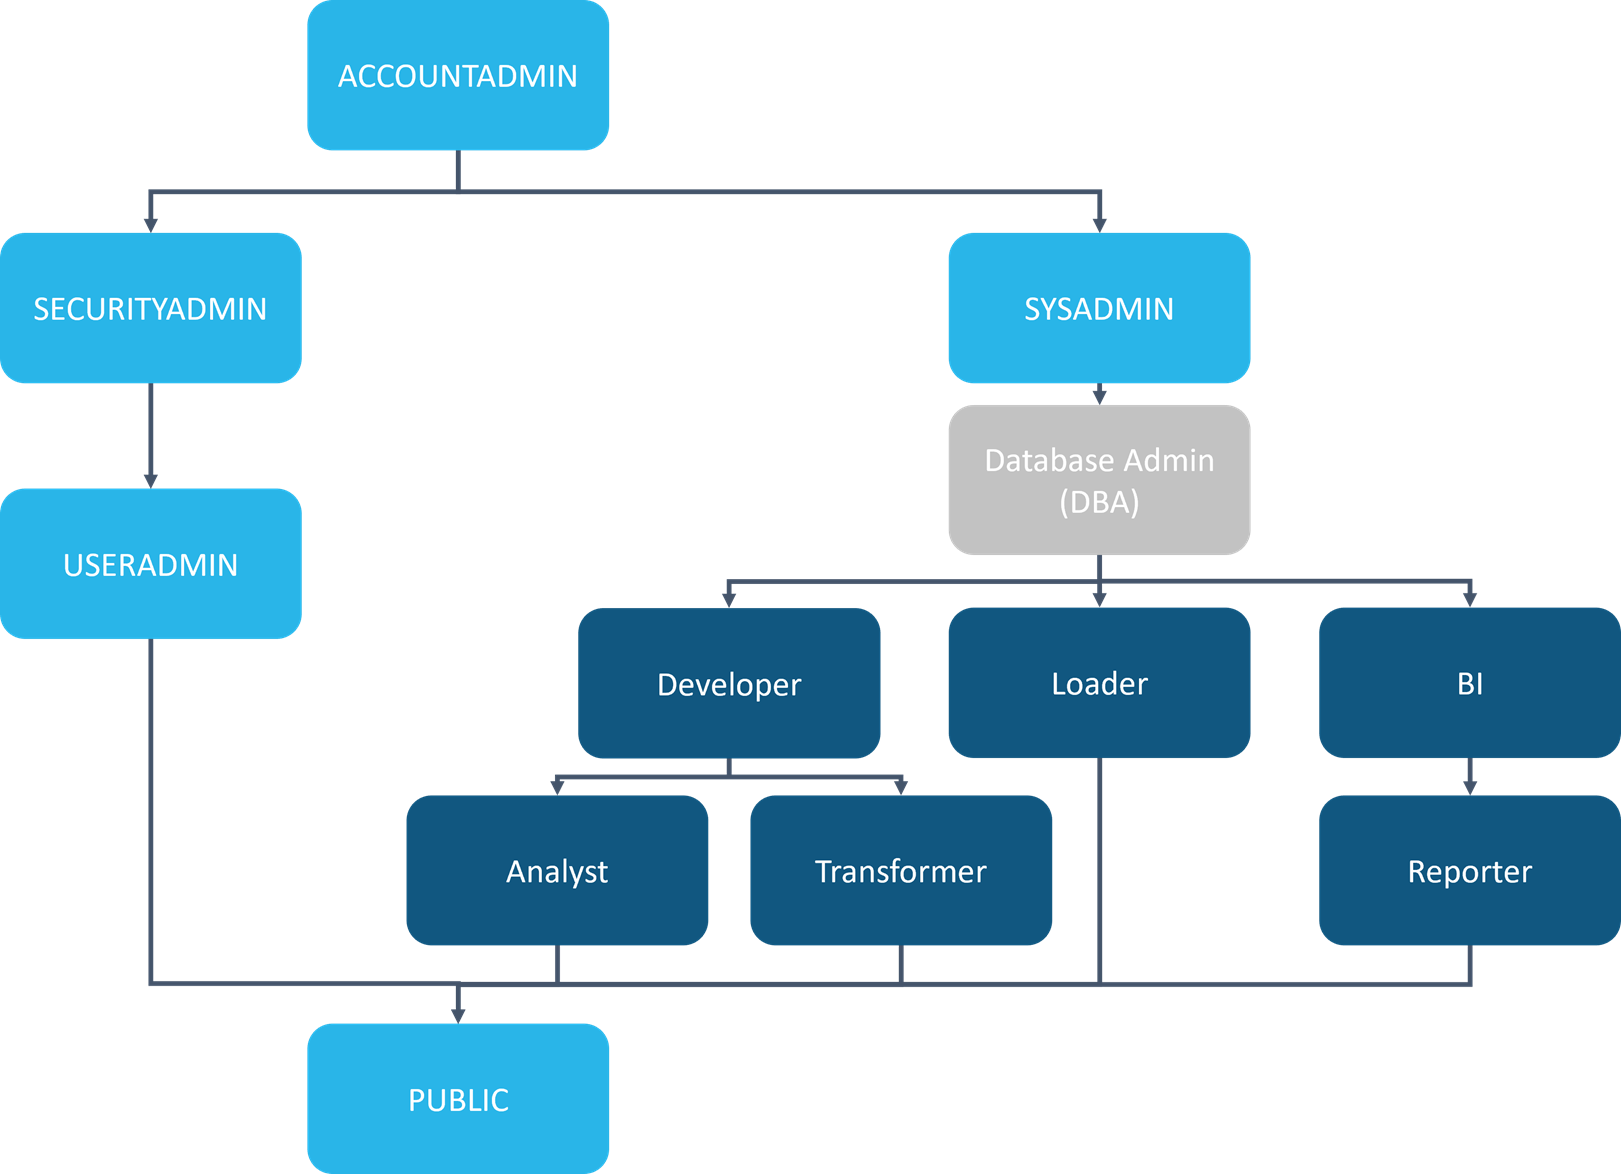 Abbildung 6 - Einordnung von unternehmensspezifischen Rollen in die Rollenhierarchie